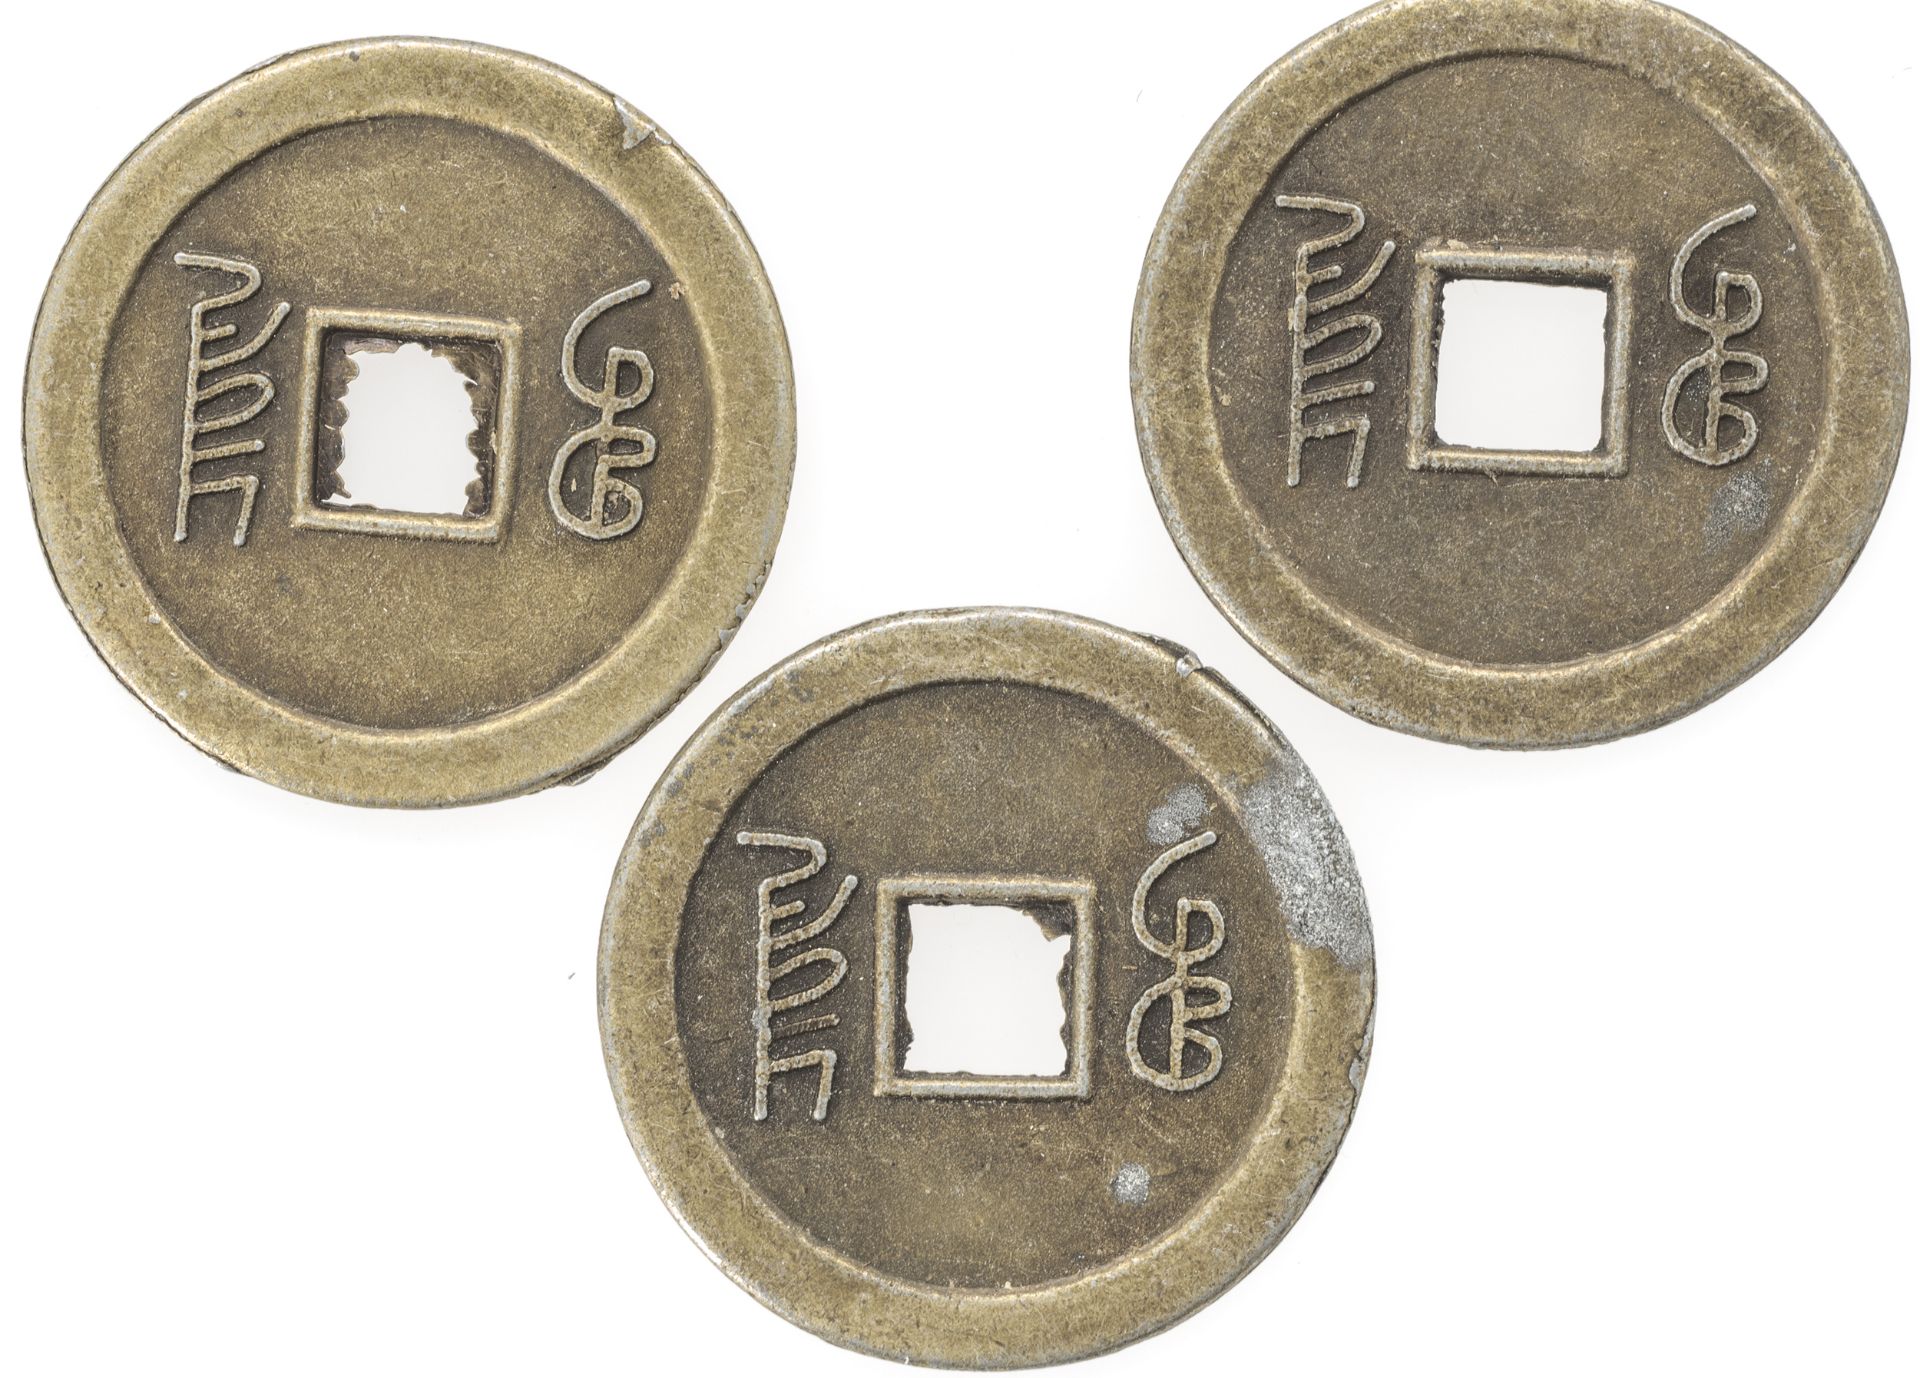 China, Qing - Dynastie, drei Käsch - Münzen. Erhaltung: vz. - Image 2 of 2